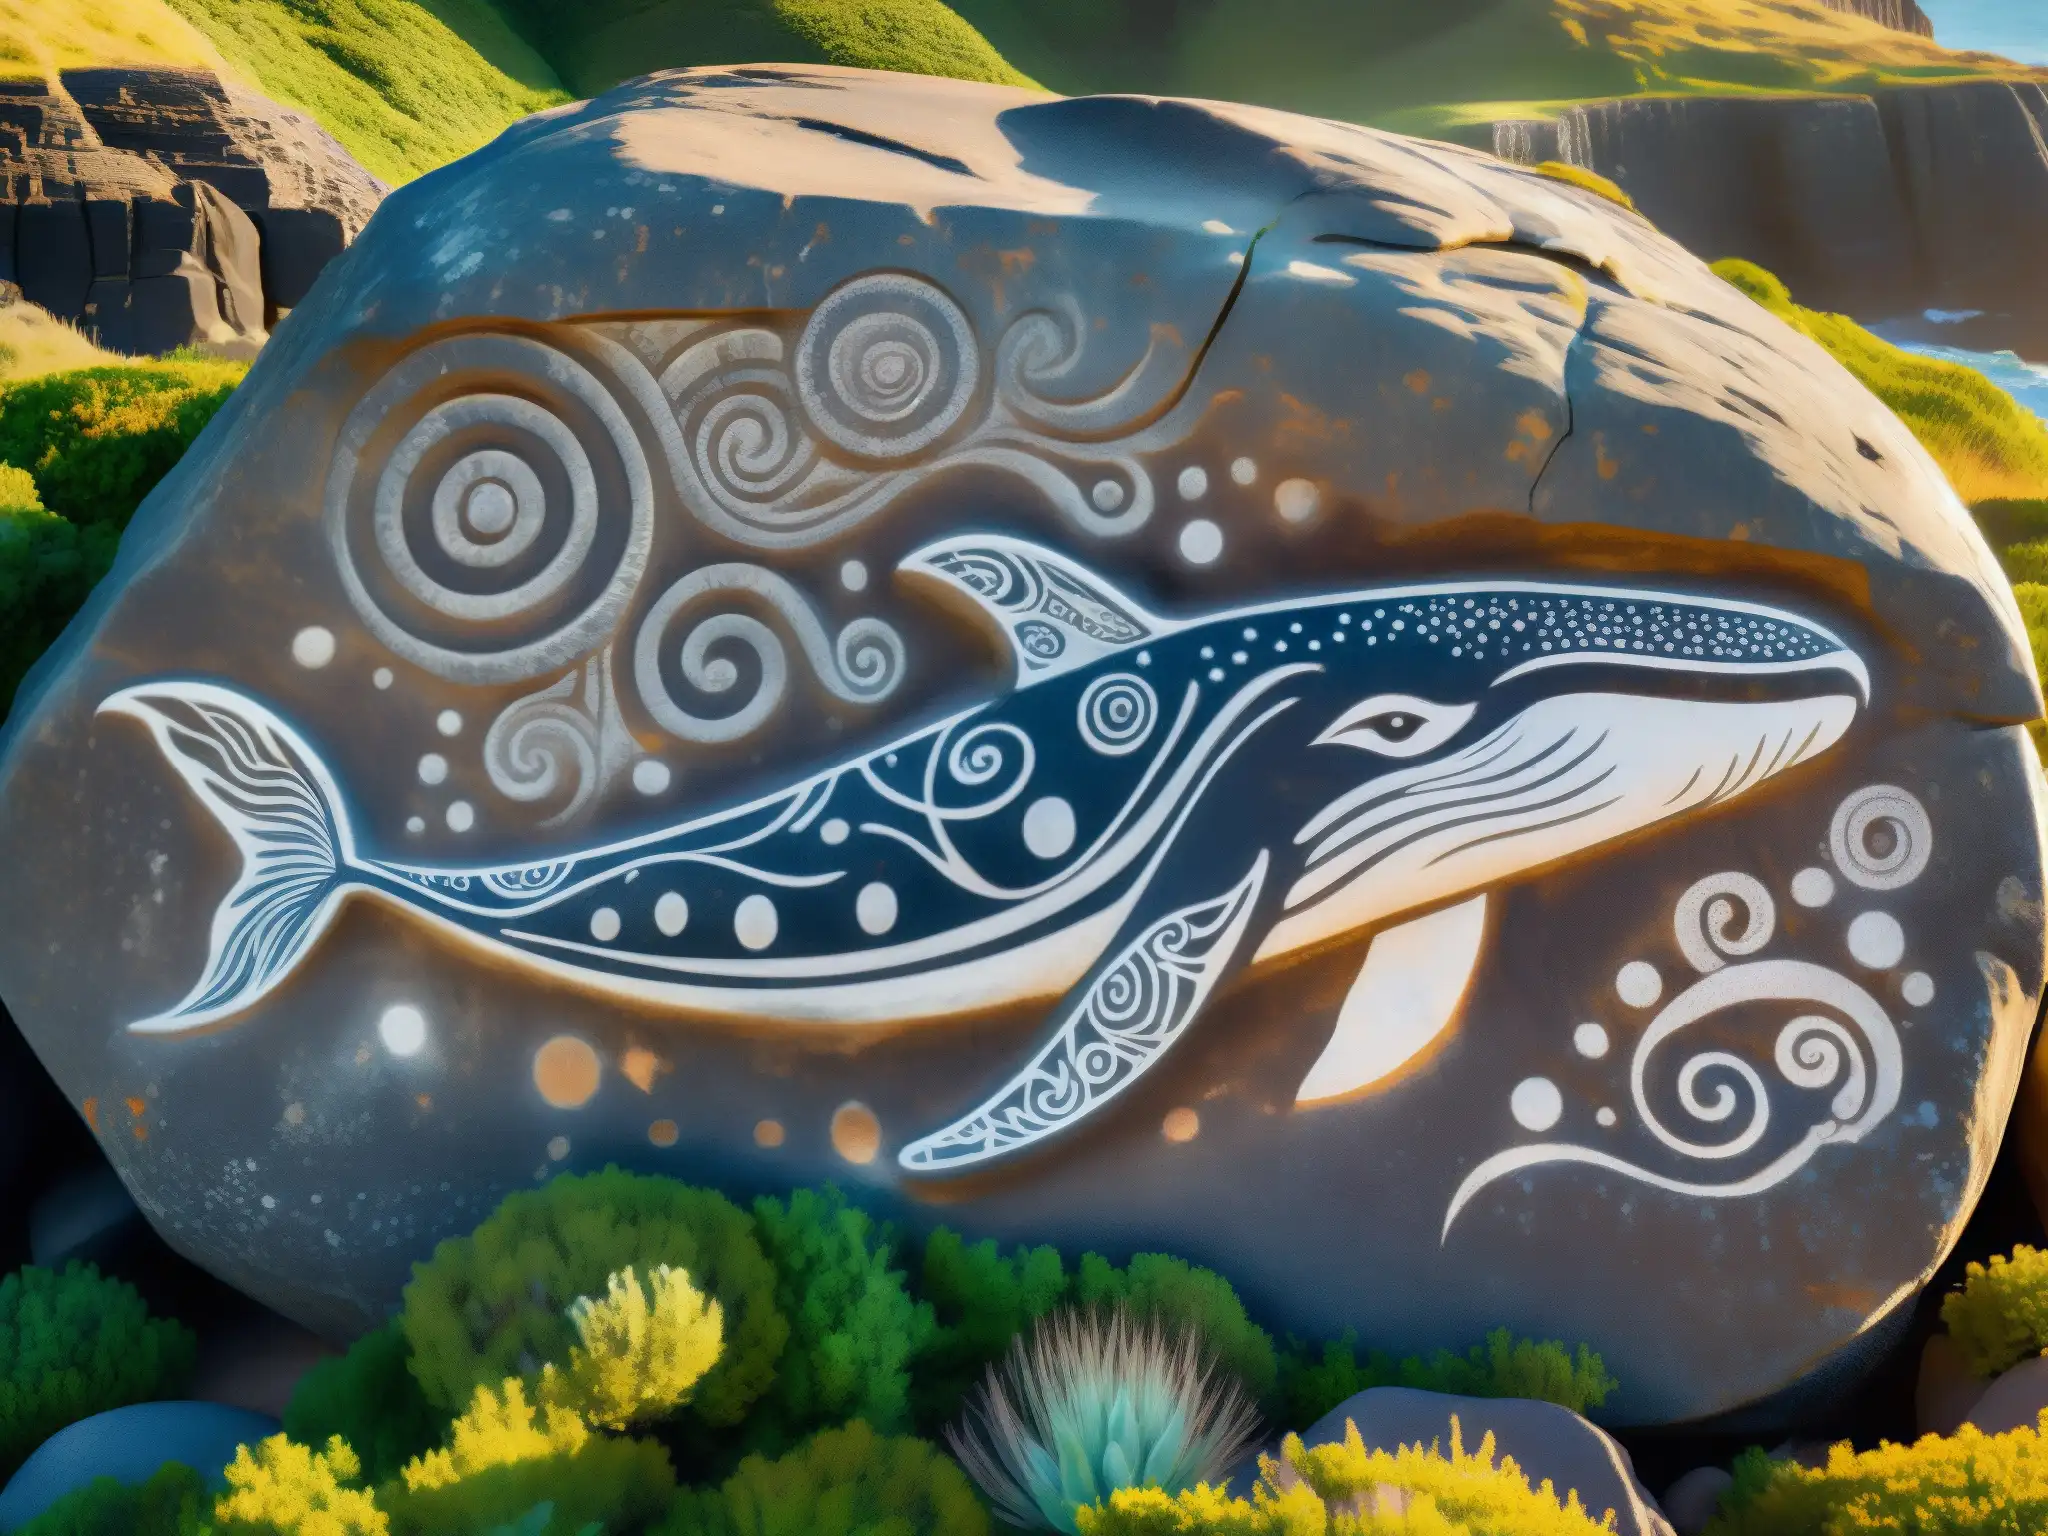 Detalle en piedra de ballena antigua en costa de Malabrigo evoca origen y misterio